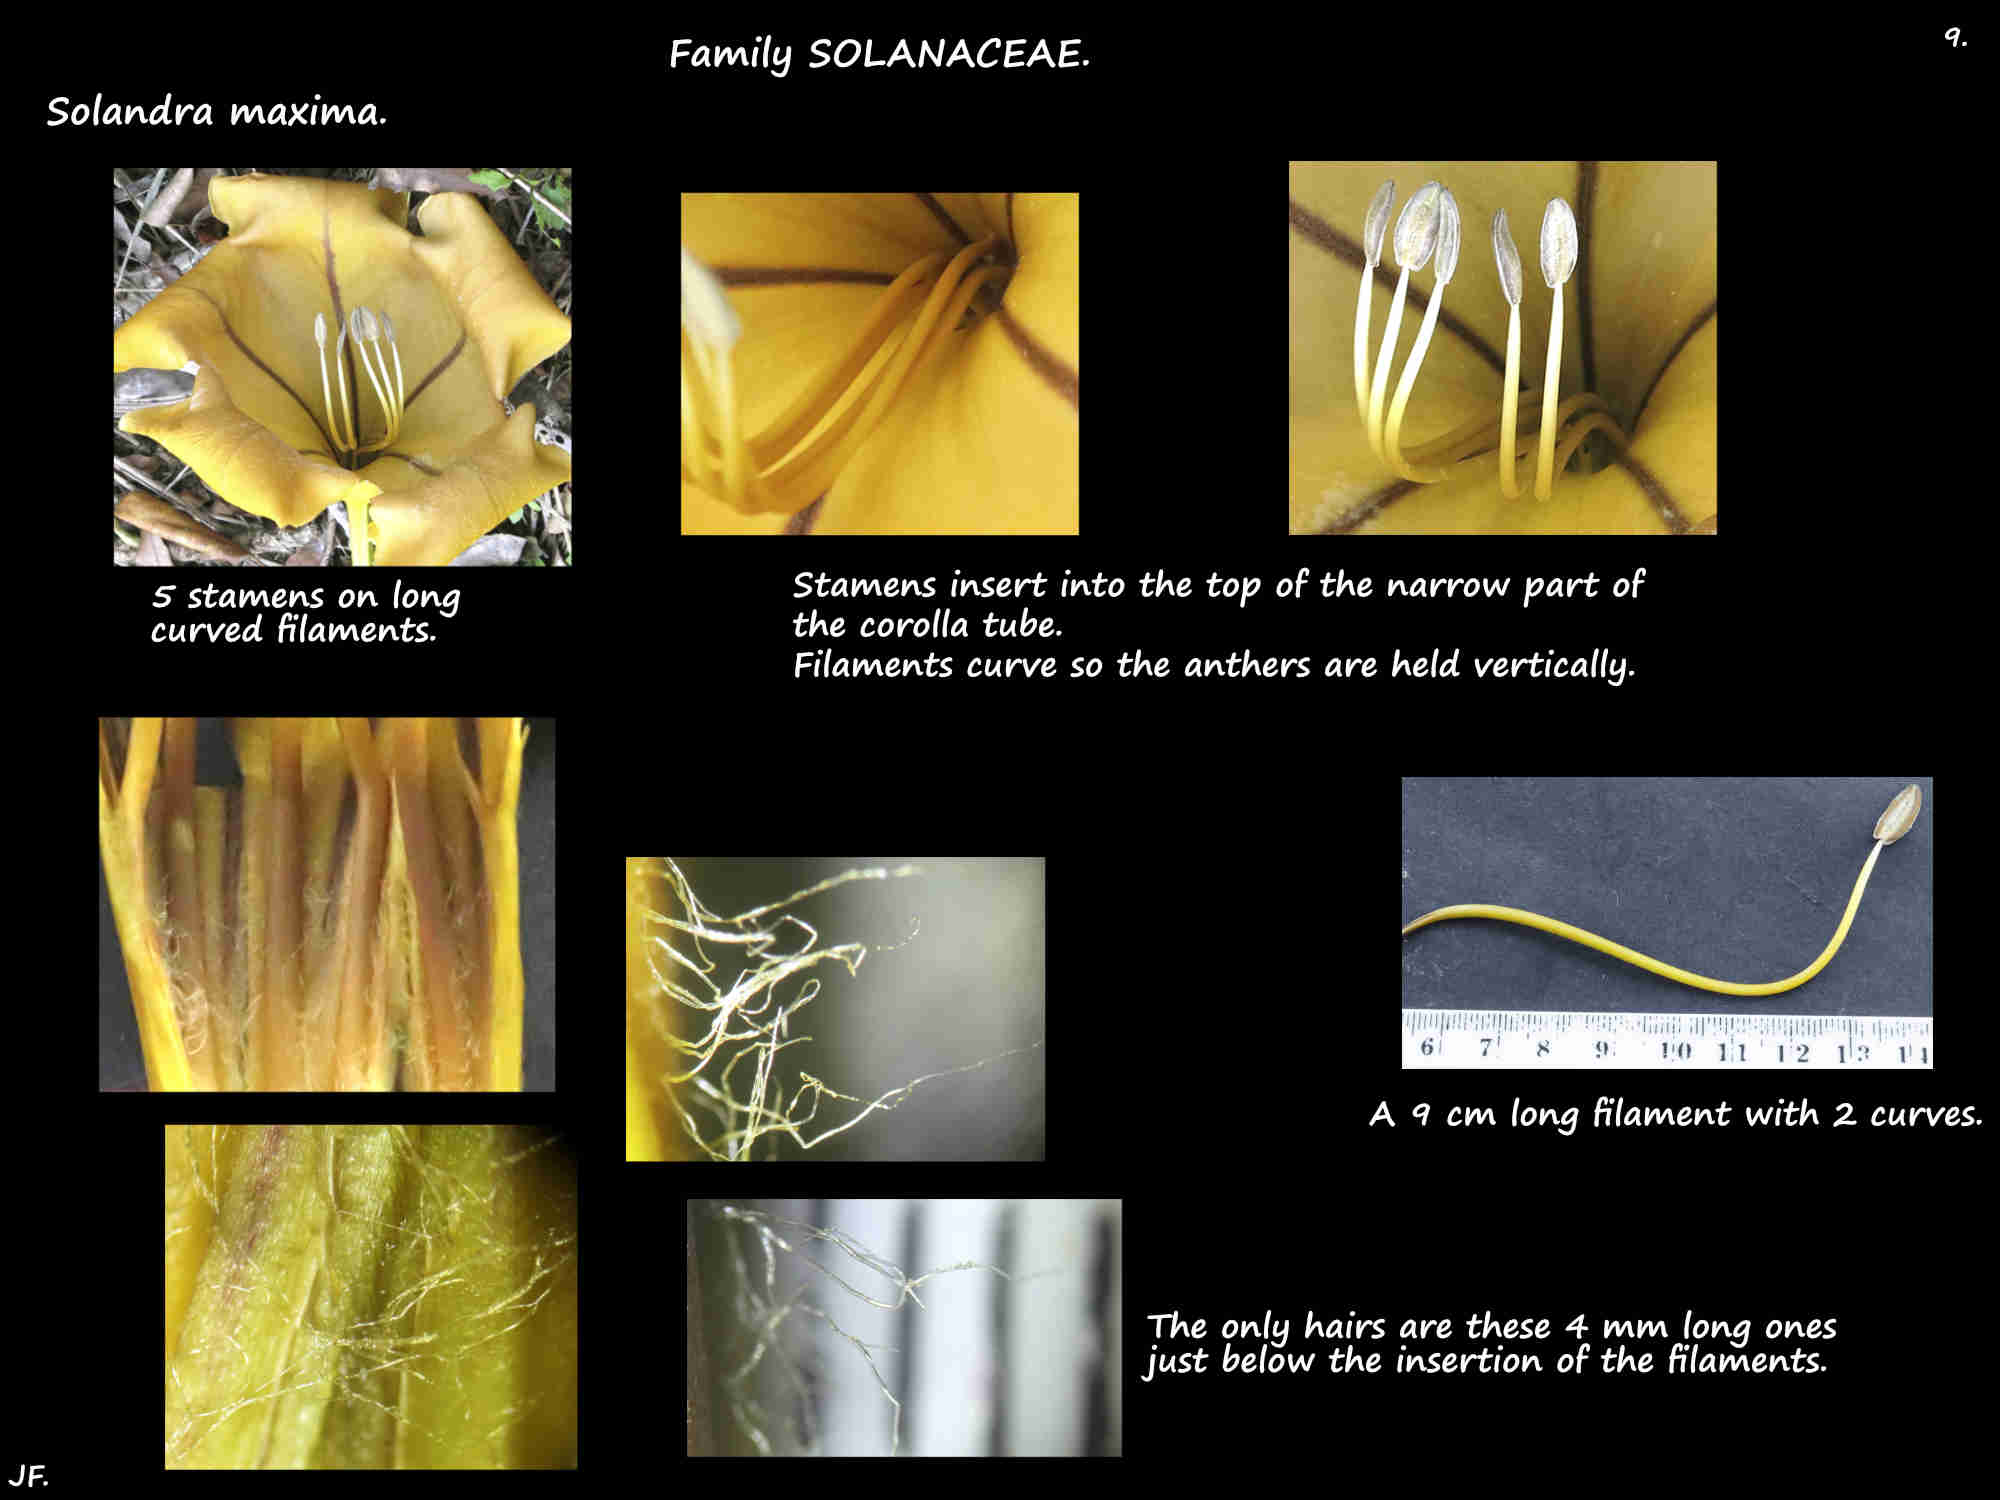 9 Solandra maxima stamen filaments